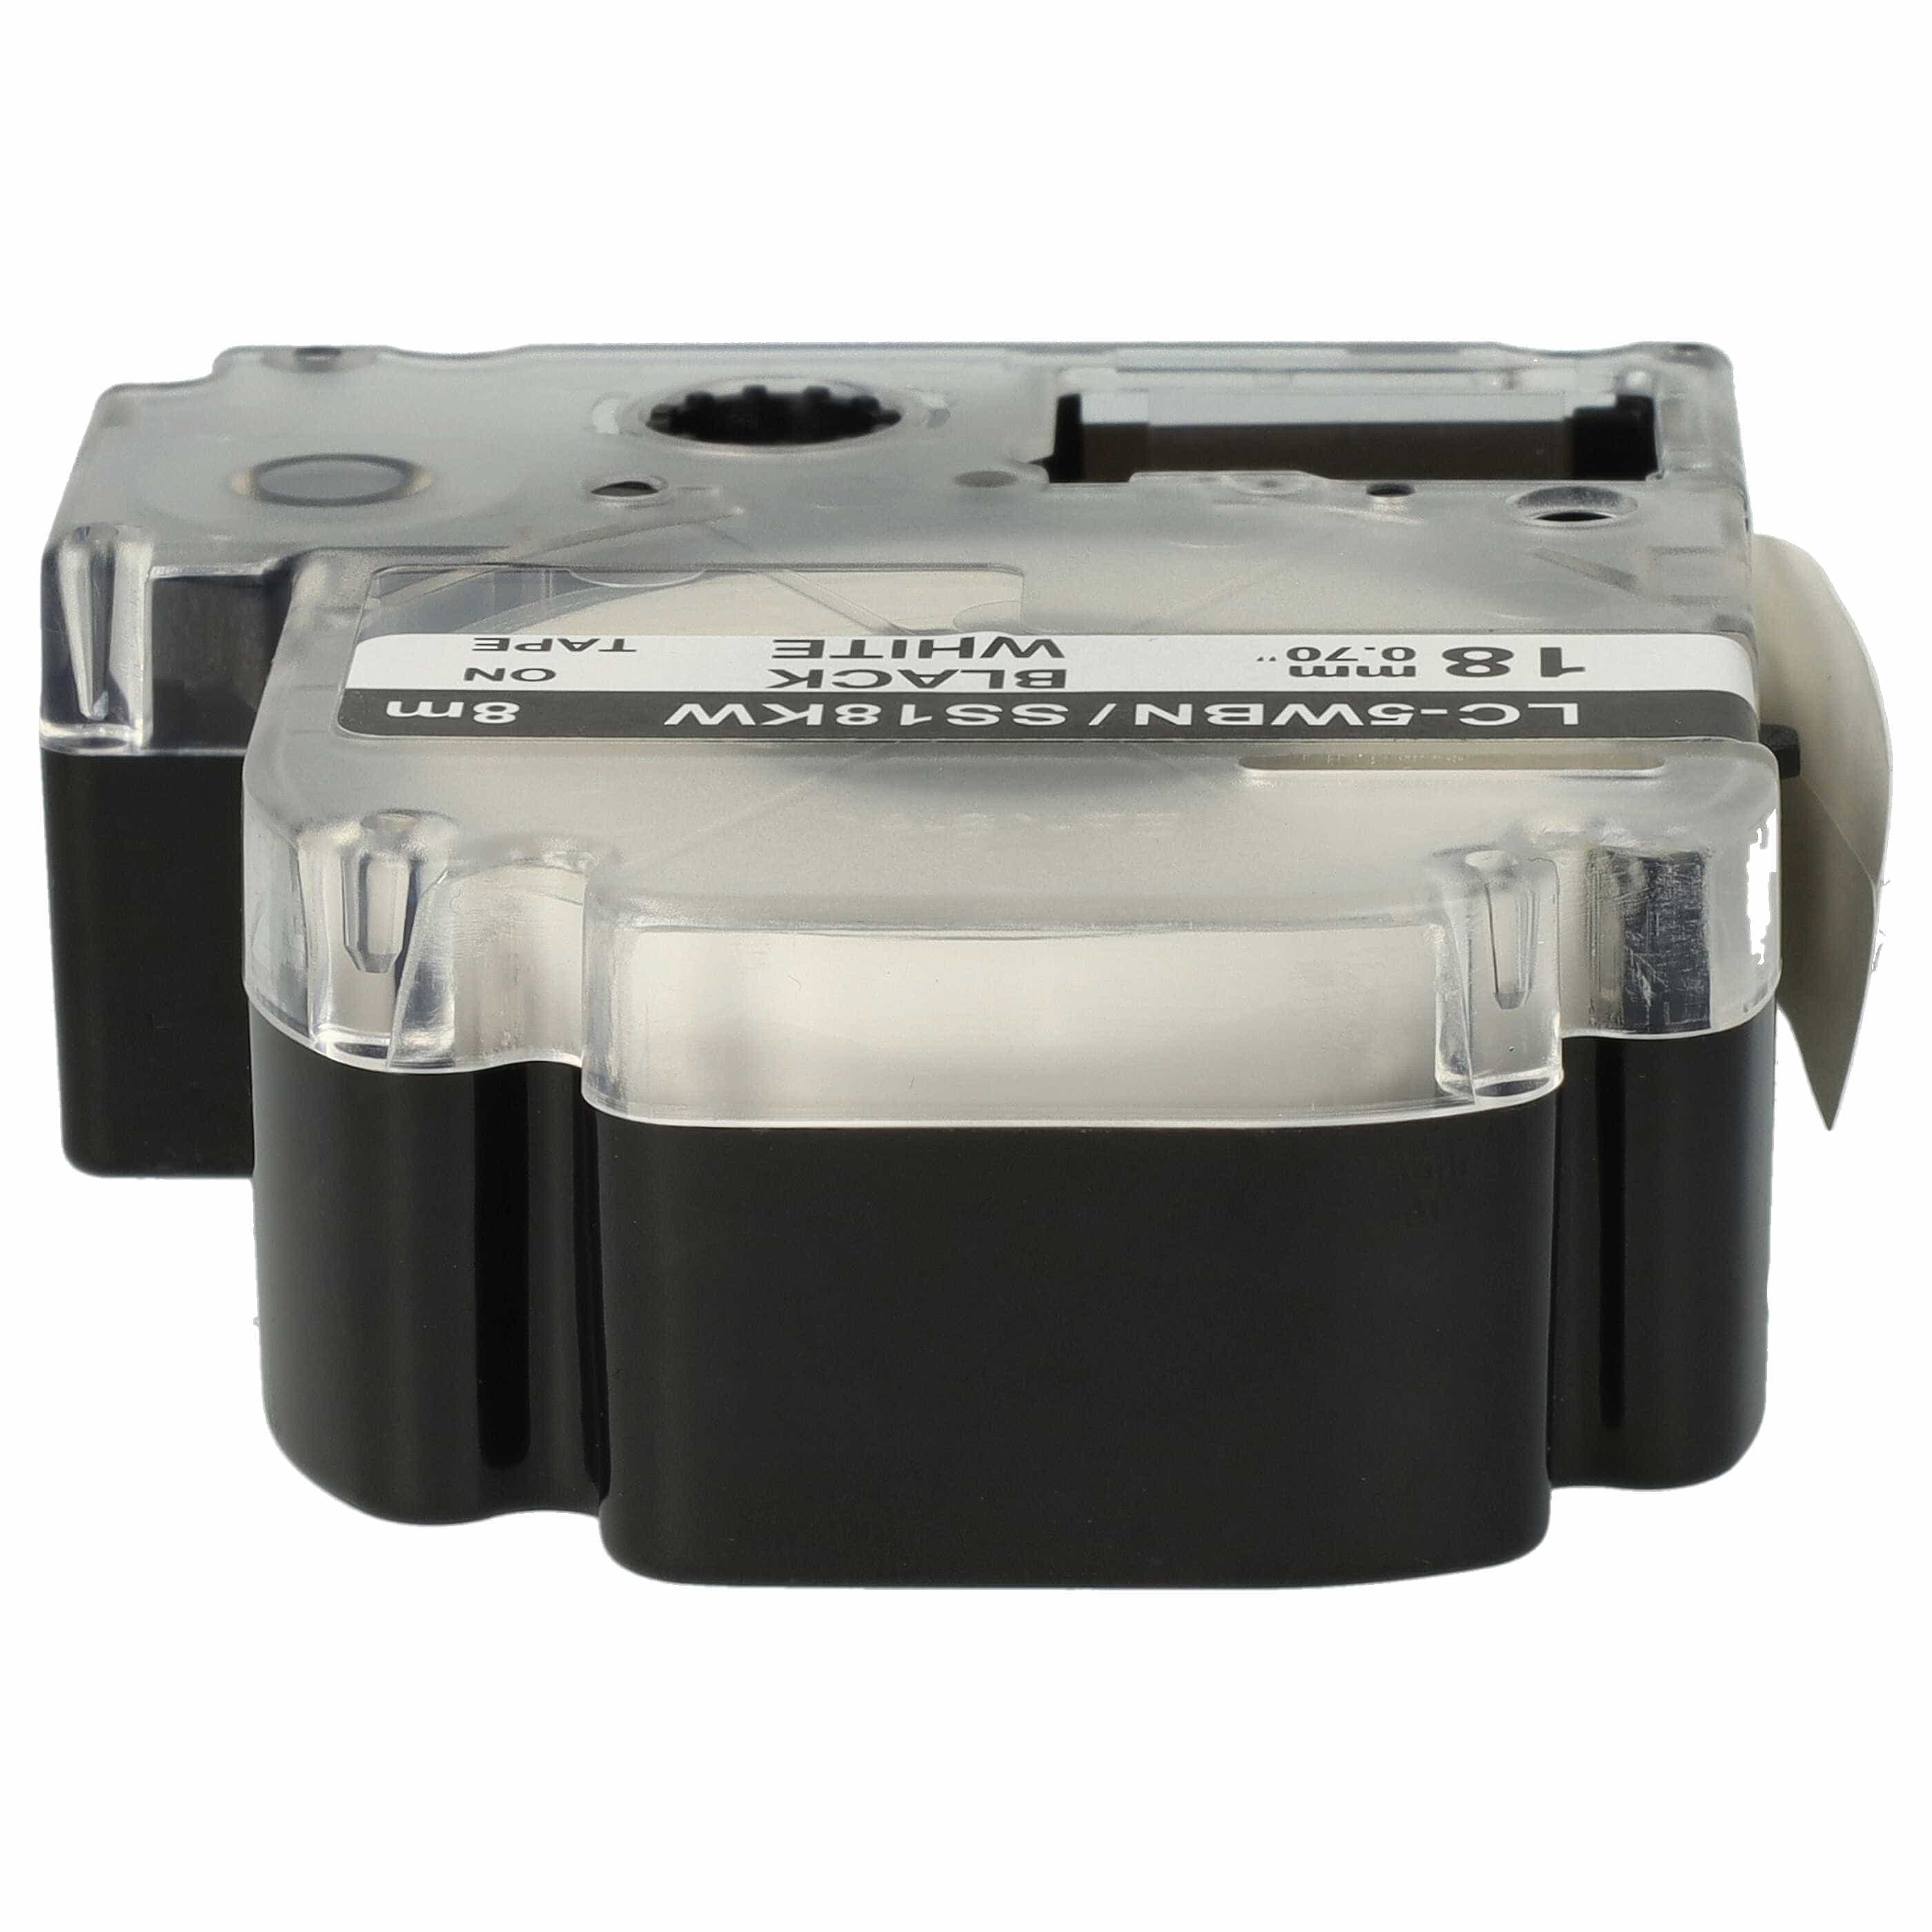 5x Cassetta nastro sostituisce Epson SS18KW, LC-5WBN per etichettatrice Epson 18mm nero su bianco